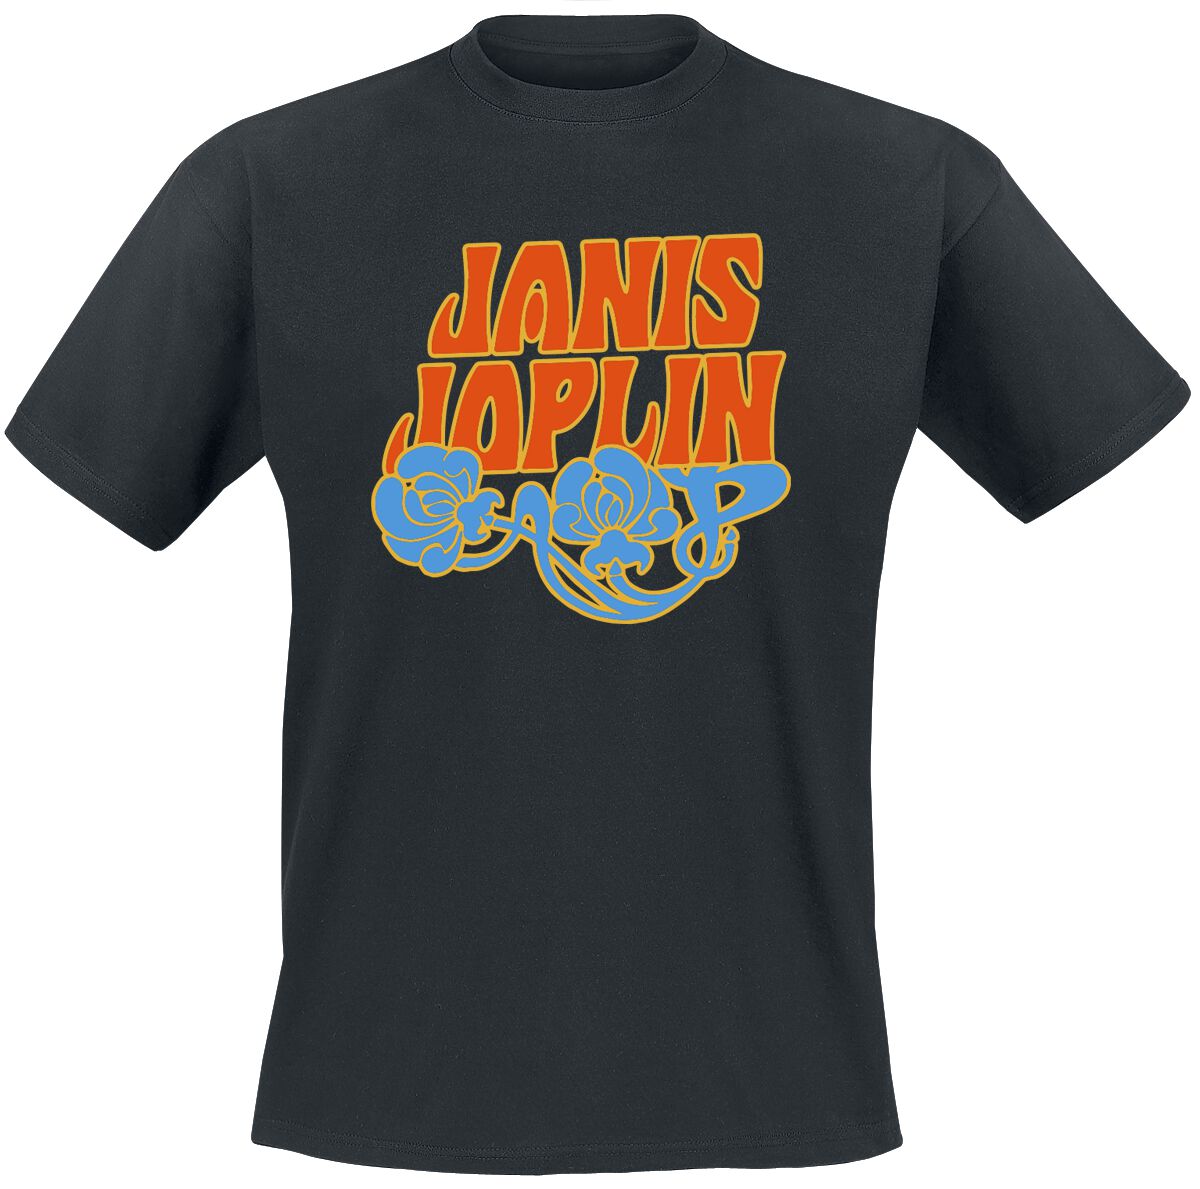 Joplin, Janis T-Shirt - Floral Logo - S bis XXL - für Männer - Größe M - schwarz  - EMP exklusives Merchandise!